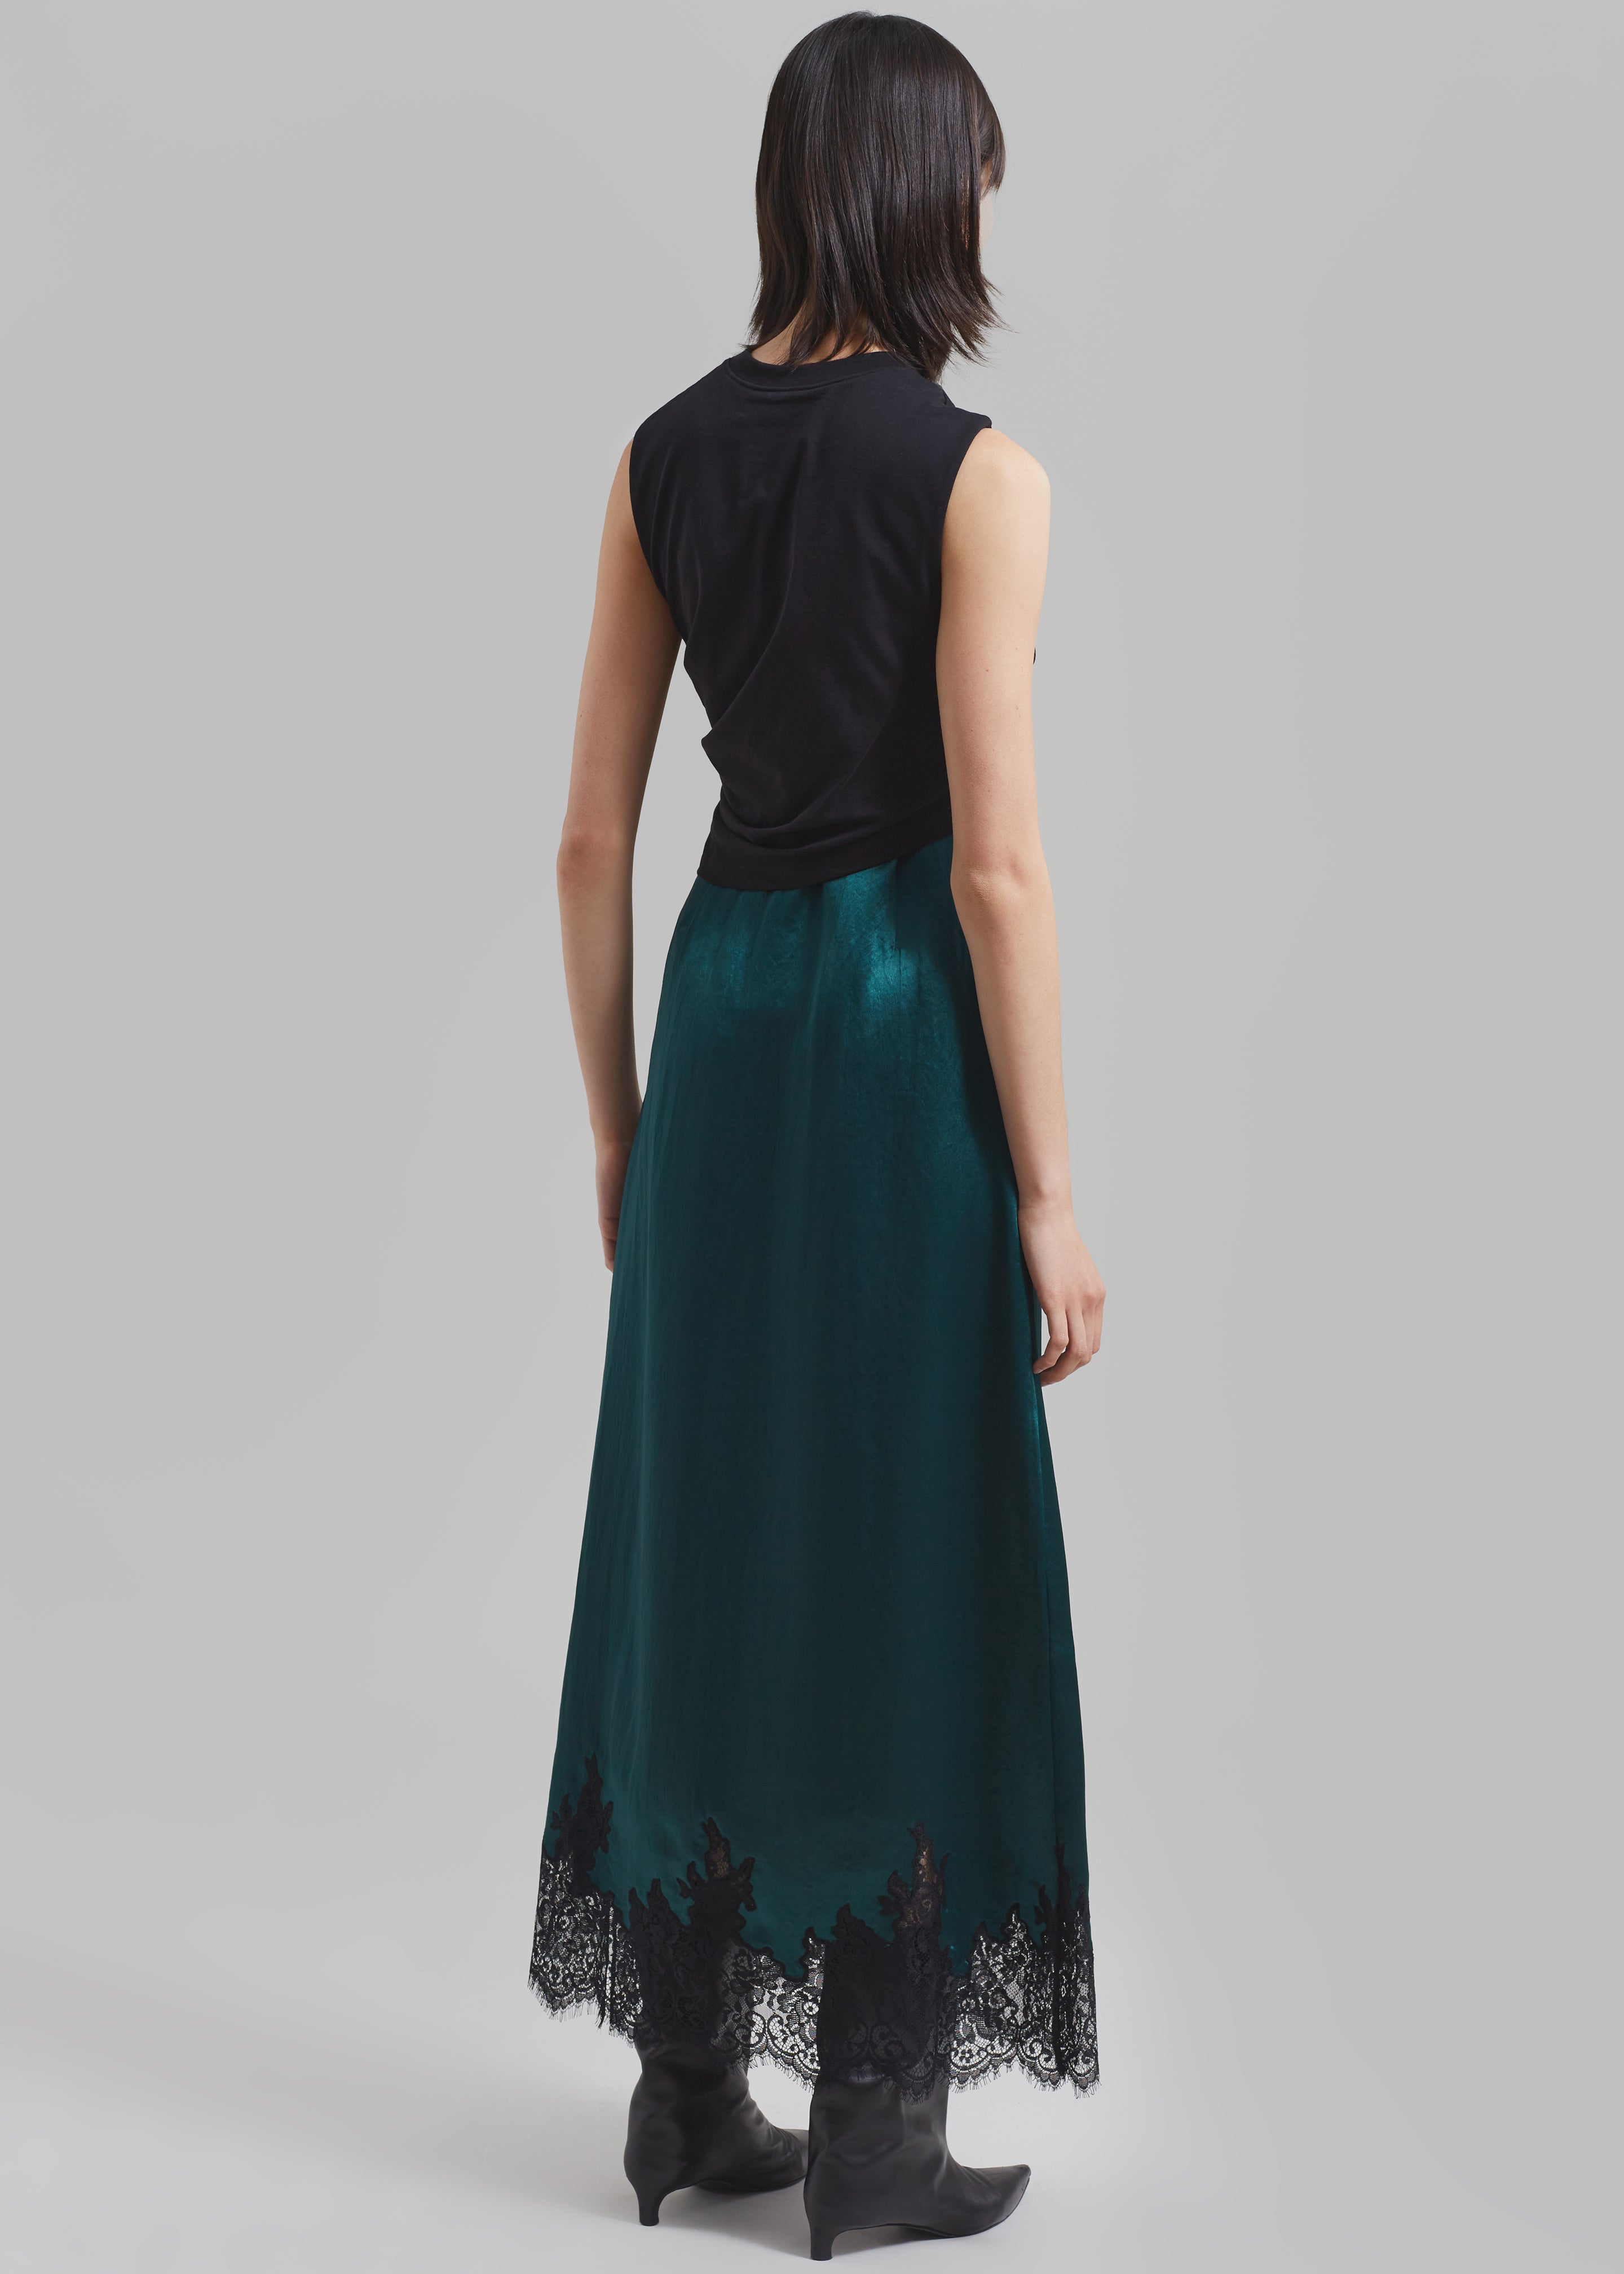 3.1 Phillip Lim Twist Tank Slip Dress - Black/Emerald - 6